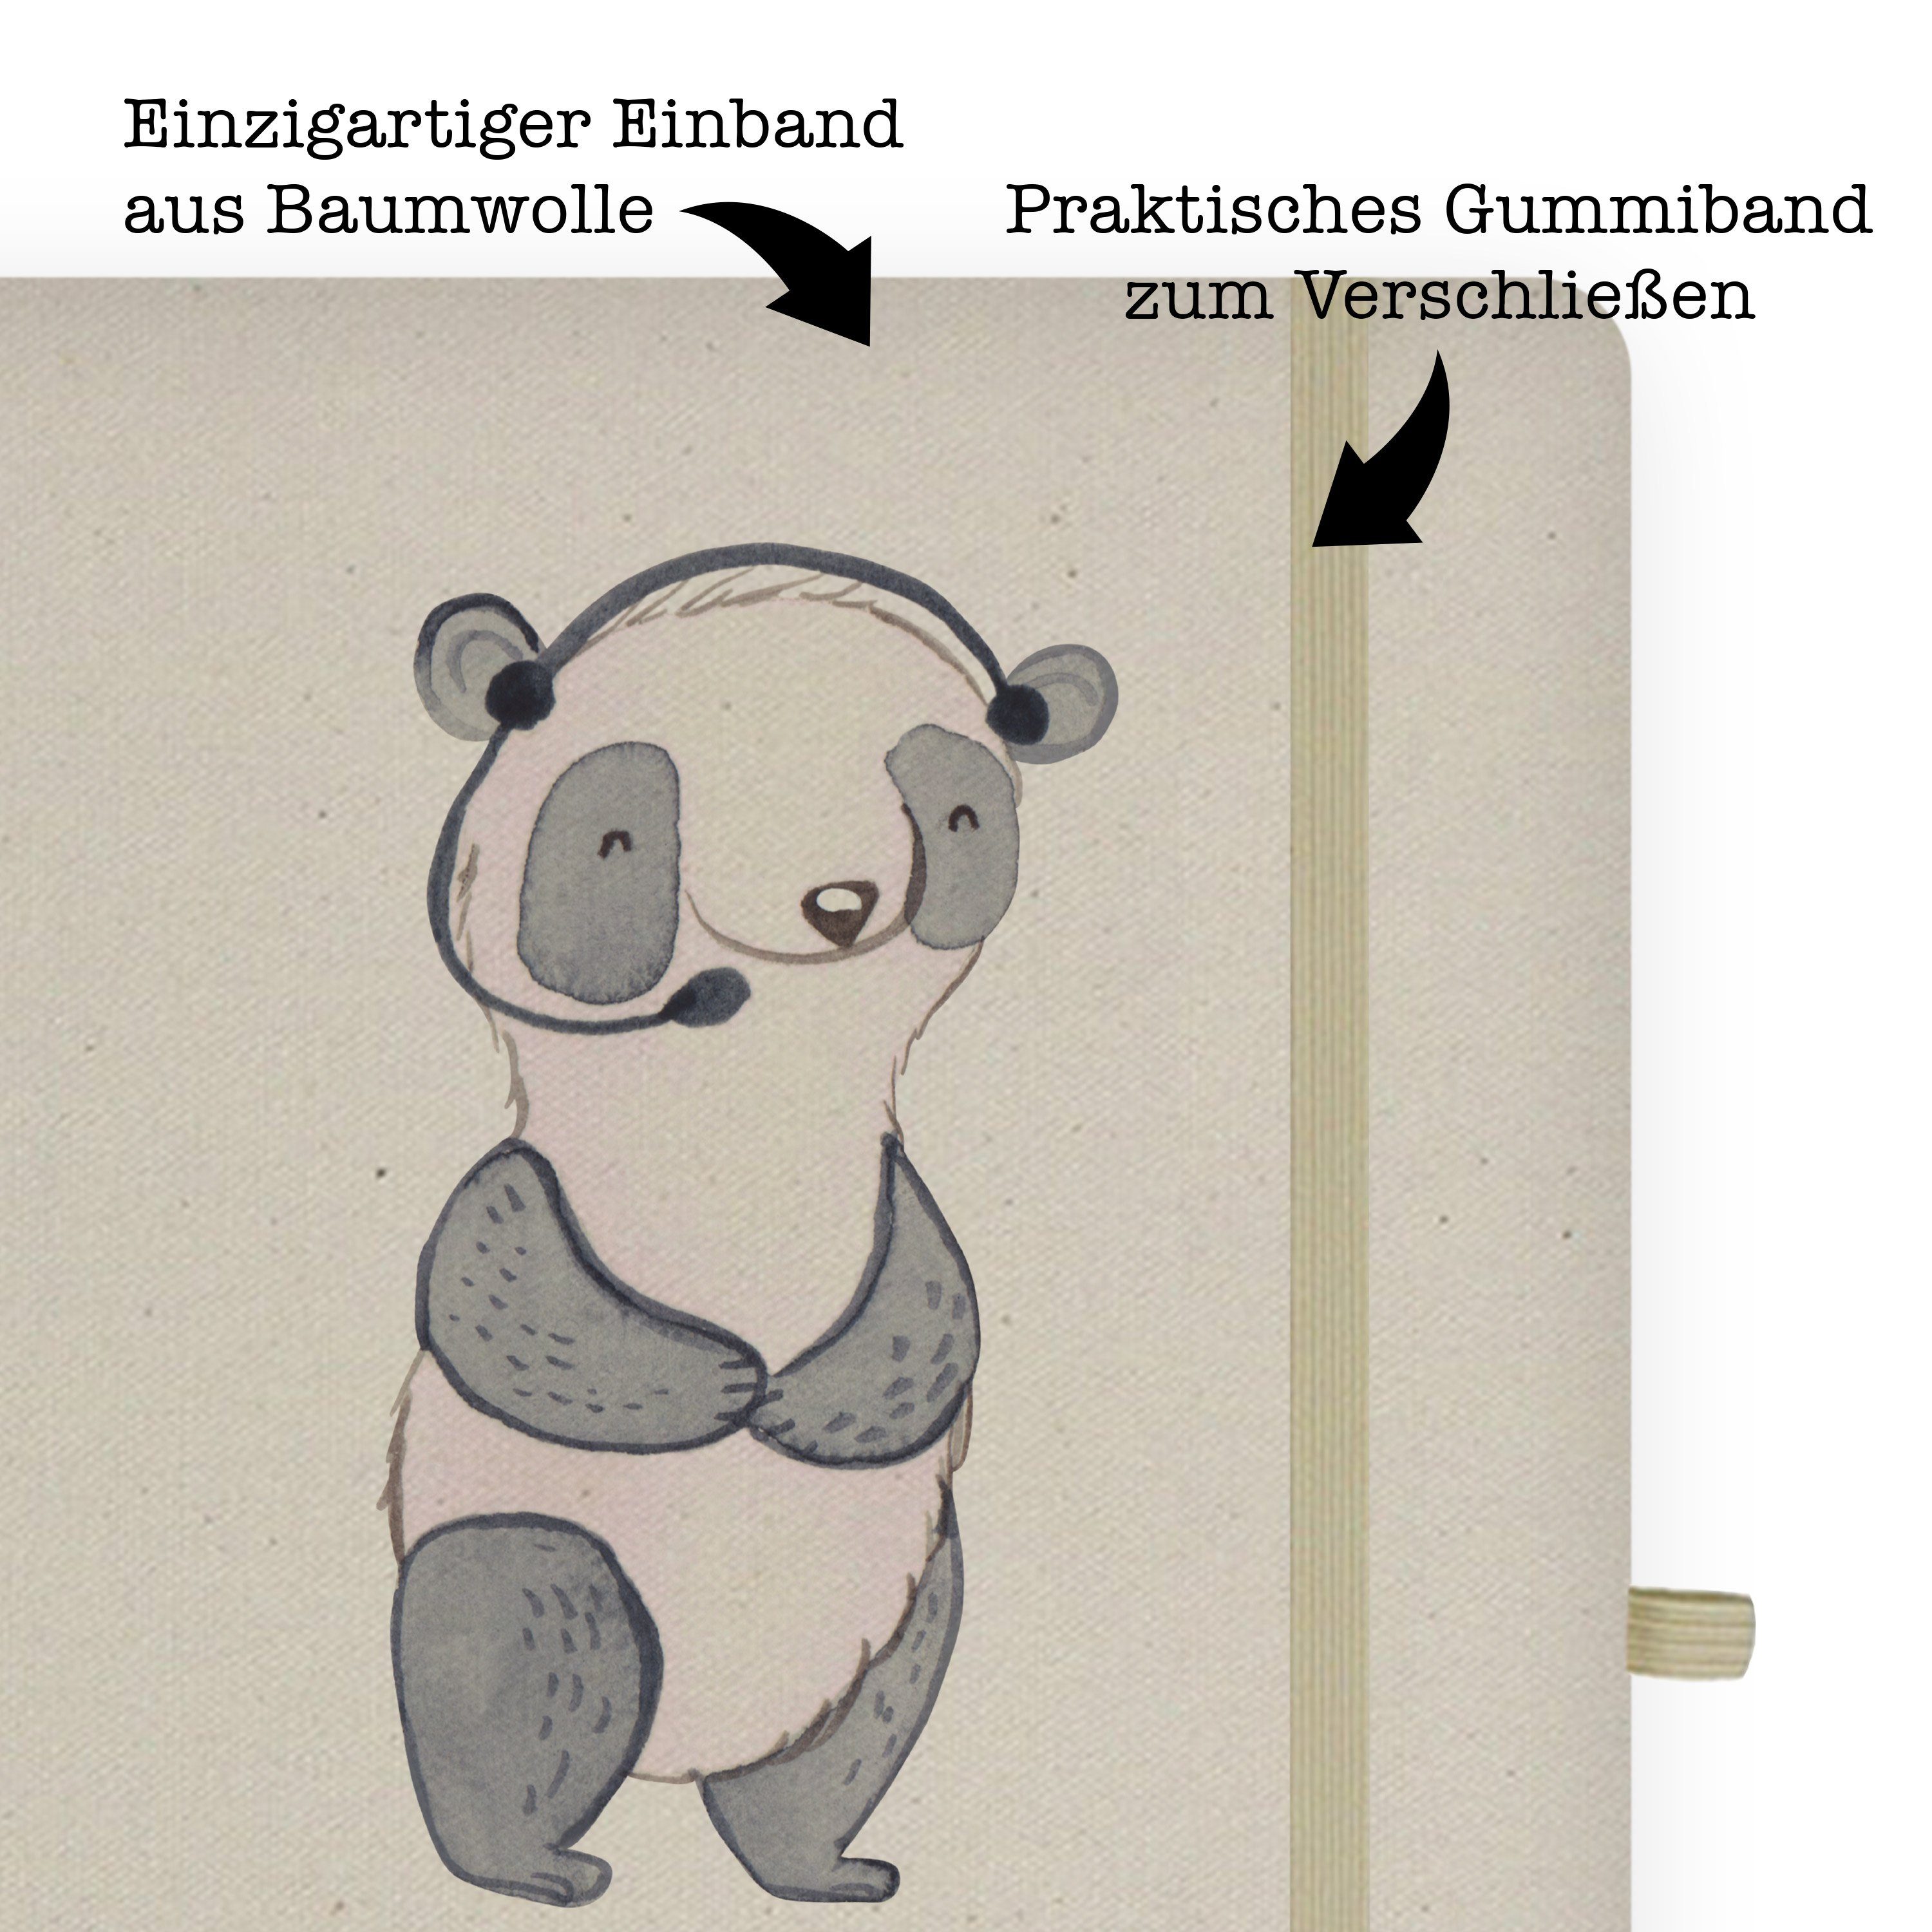 & mit Transparent - Herz Journal, Panda Meteorologin Panda Mr. Notizbuch Geschenk, - Mr. Mrs. Schreibbuch, Mrs. &